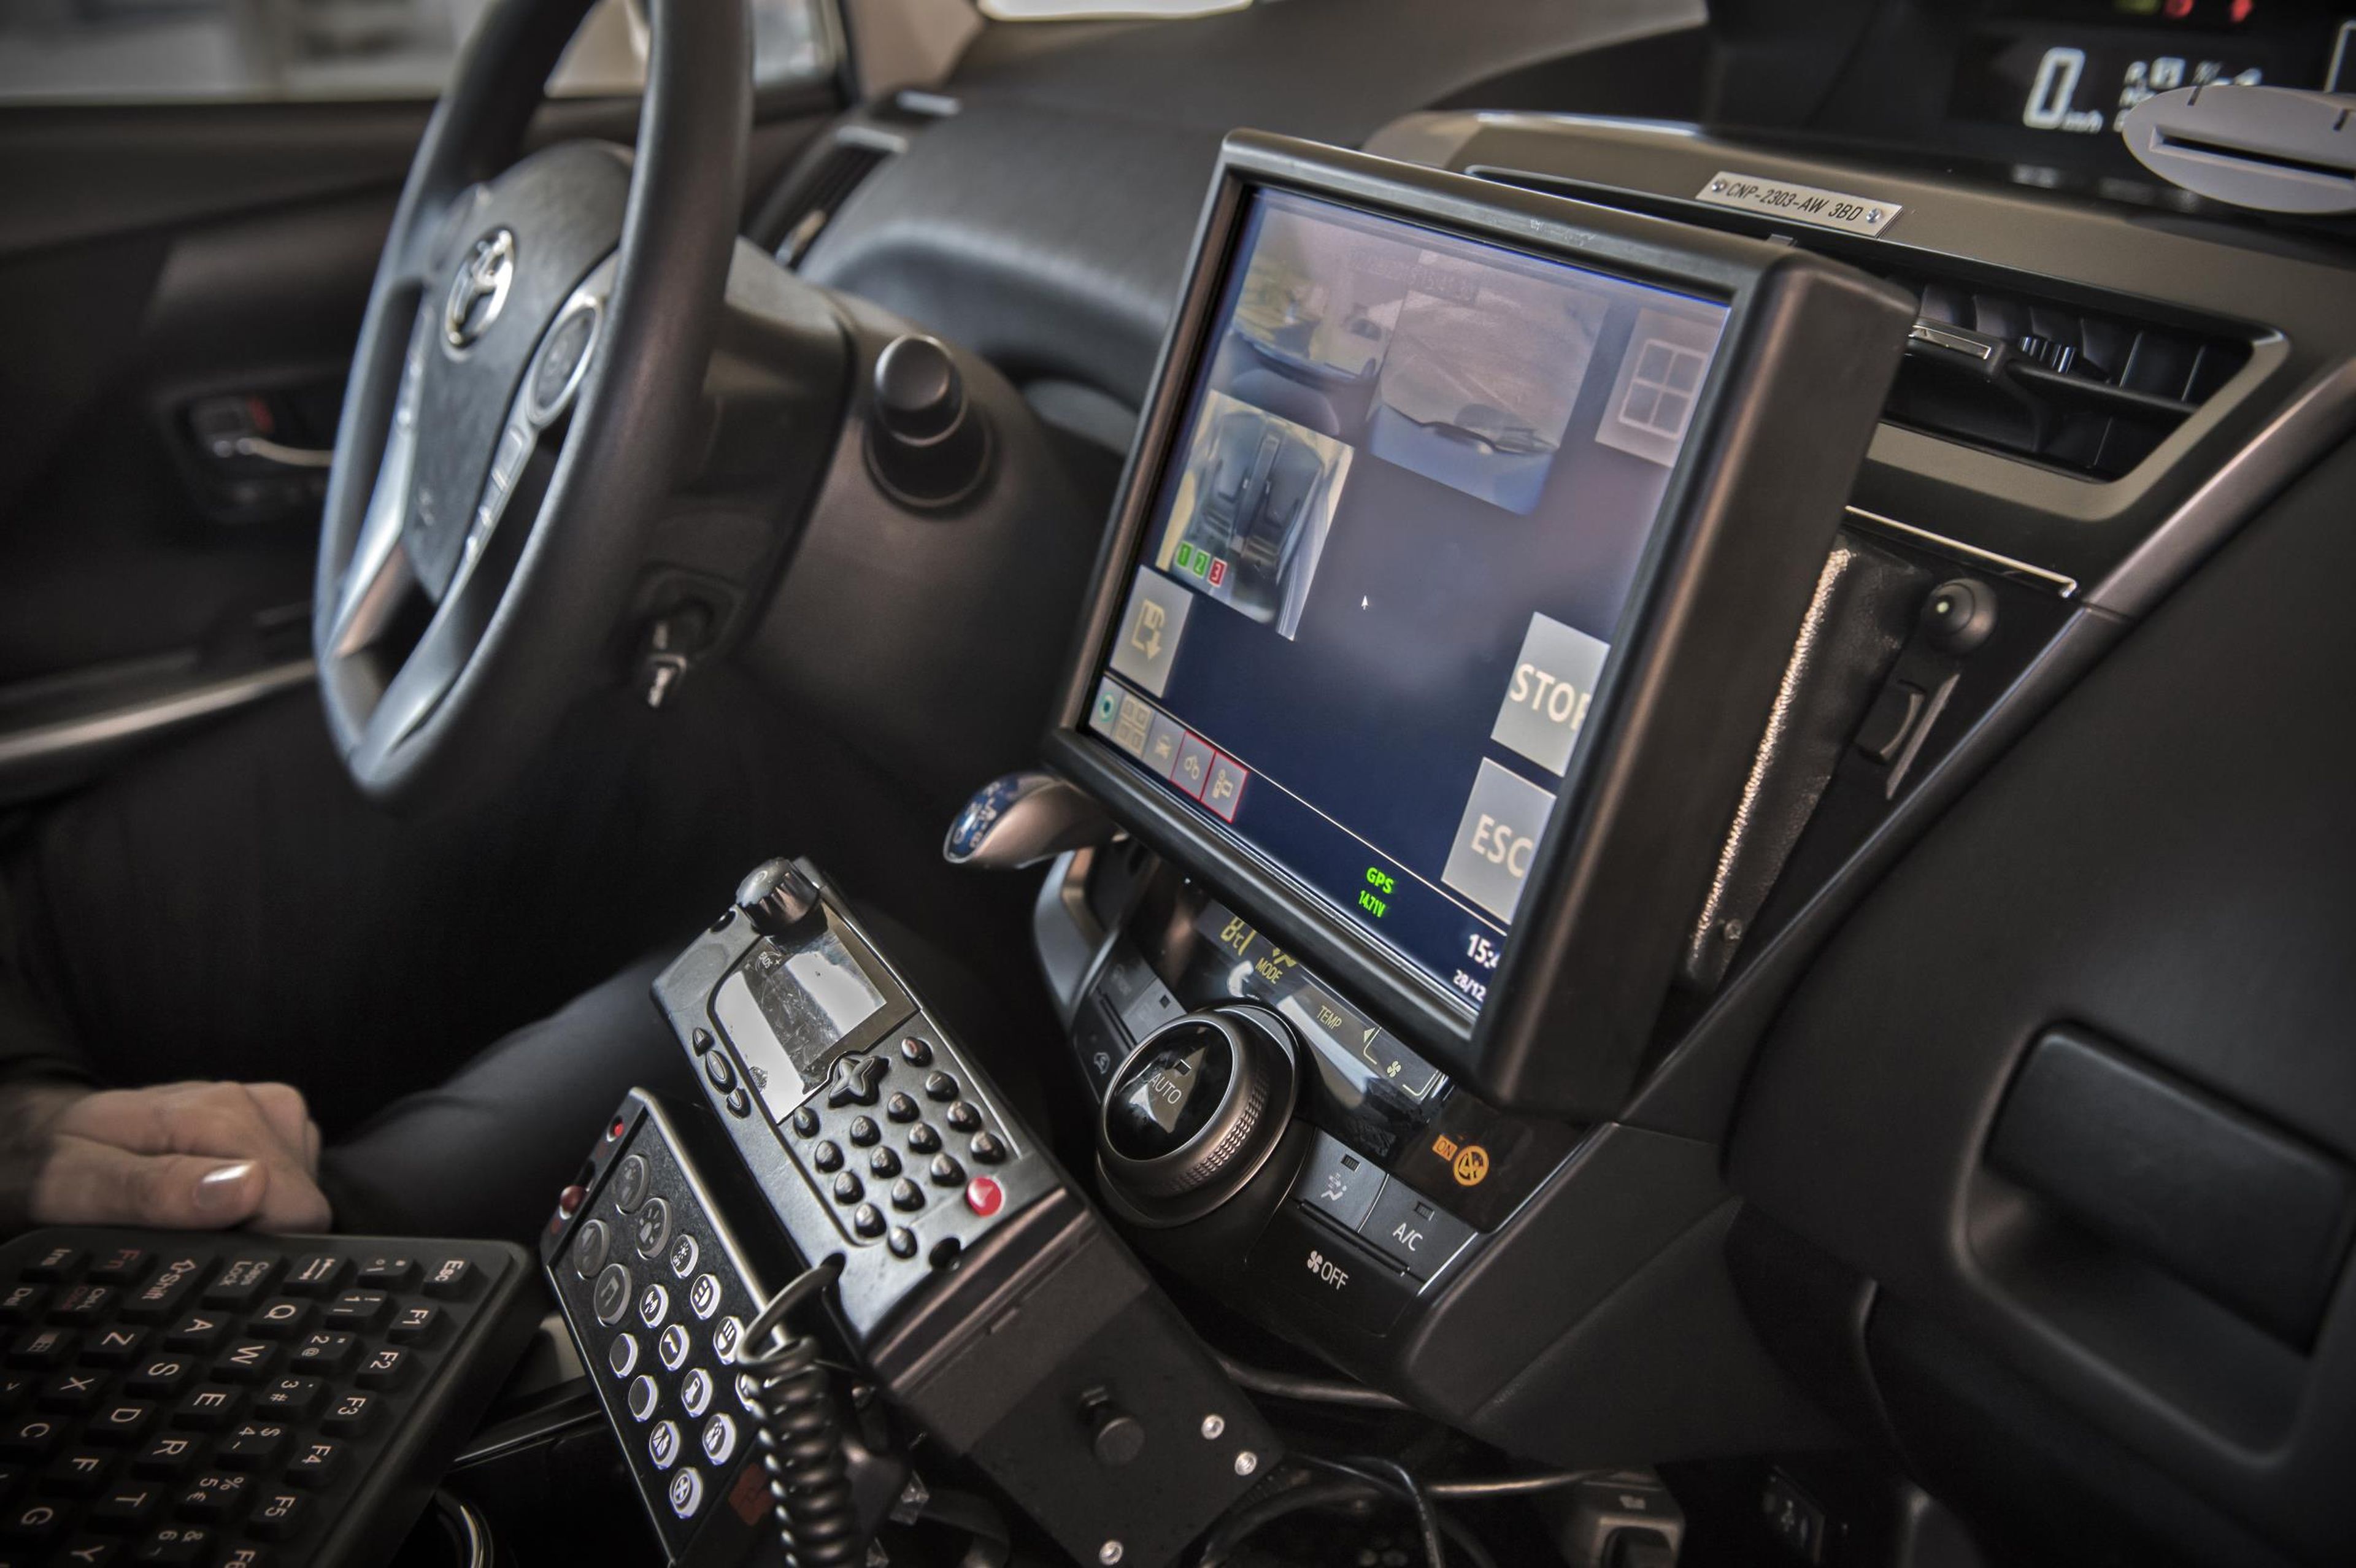 Los nuevos coches de la Policía Nacional: Toyota Prius+